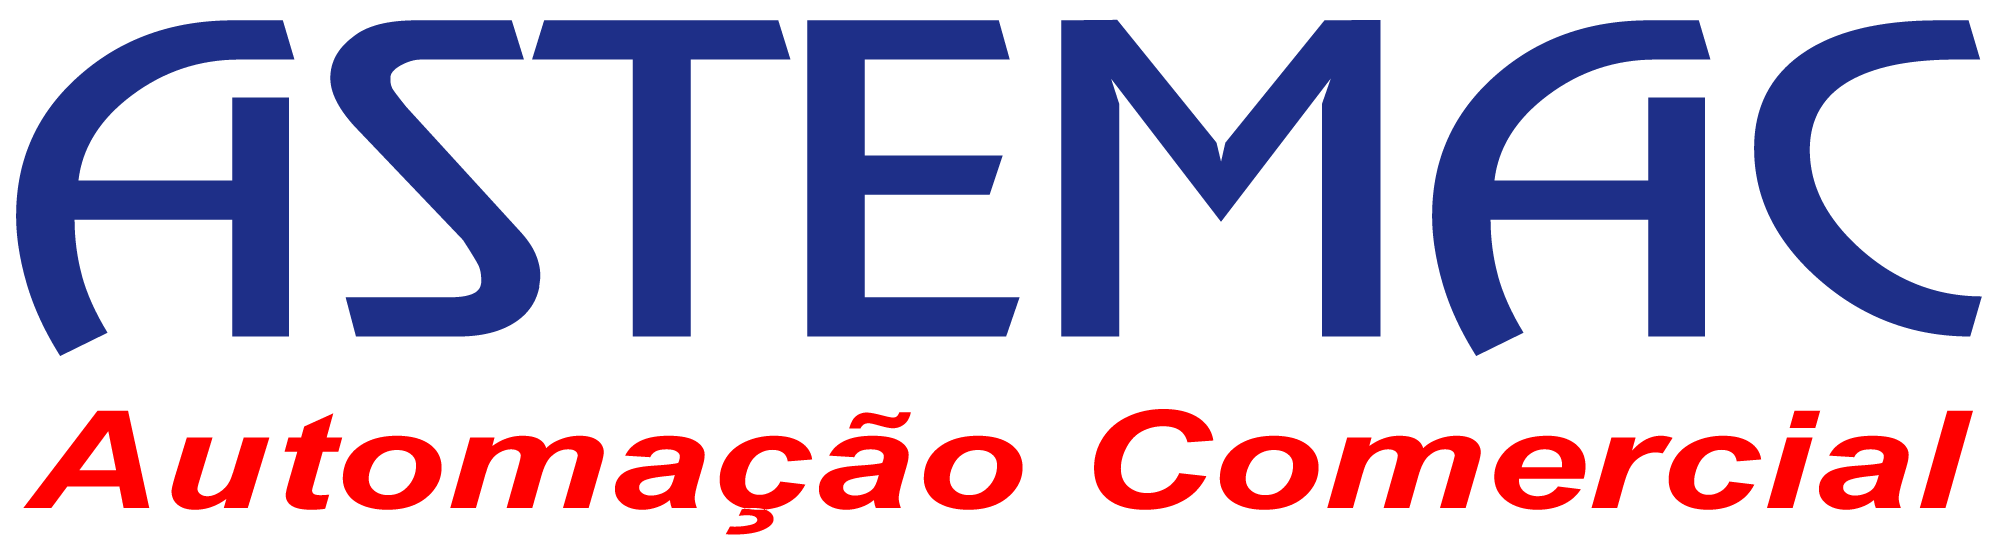 Logo Astemac